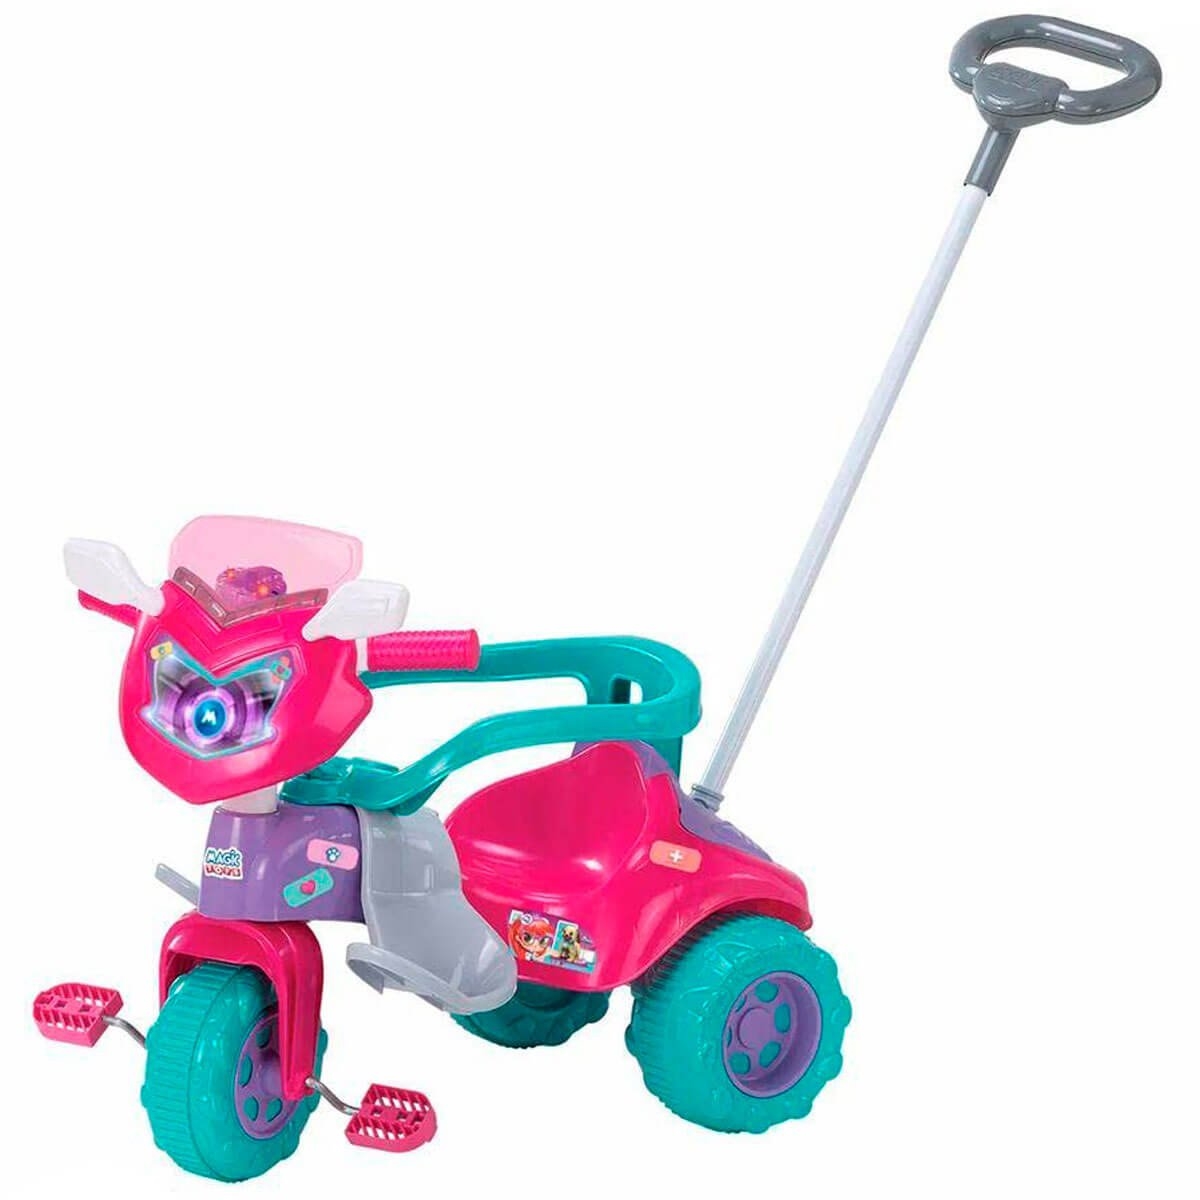 Motoca Triciclo Tico-Tico Dino Pink com Cabo - Magic Toys